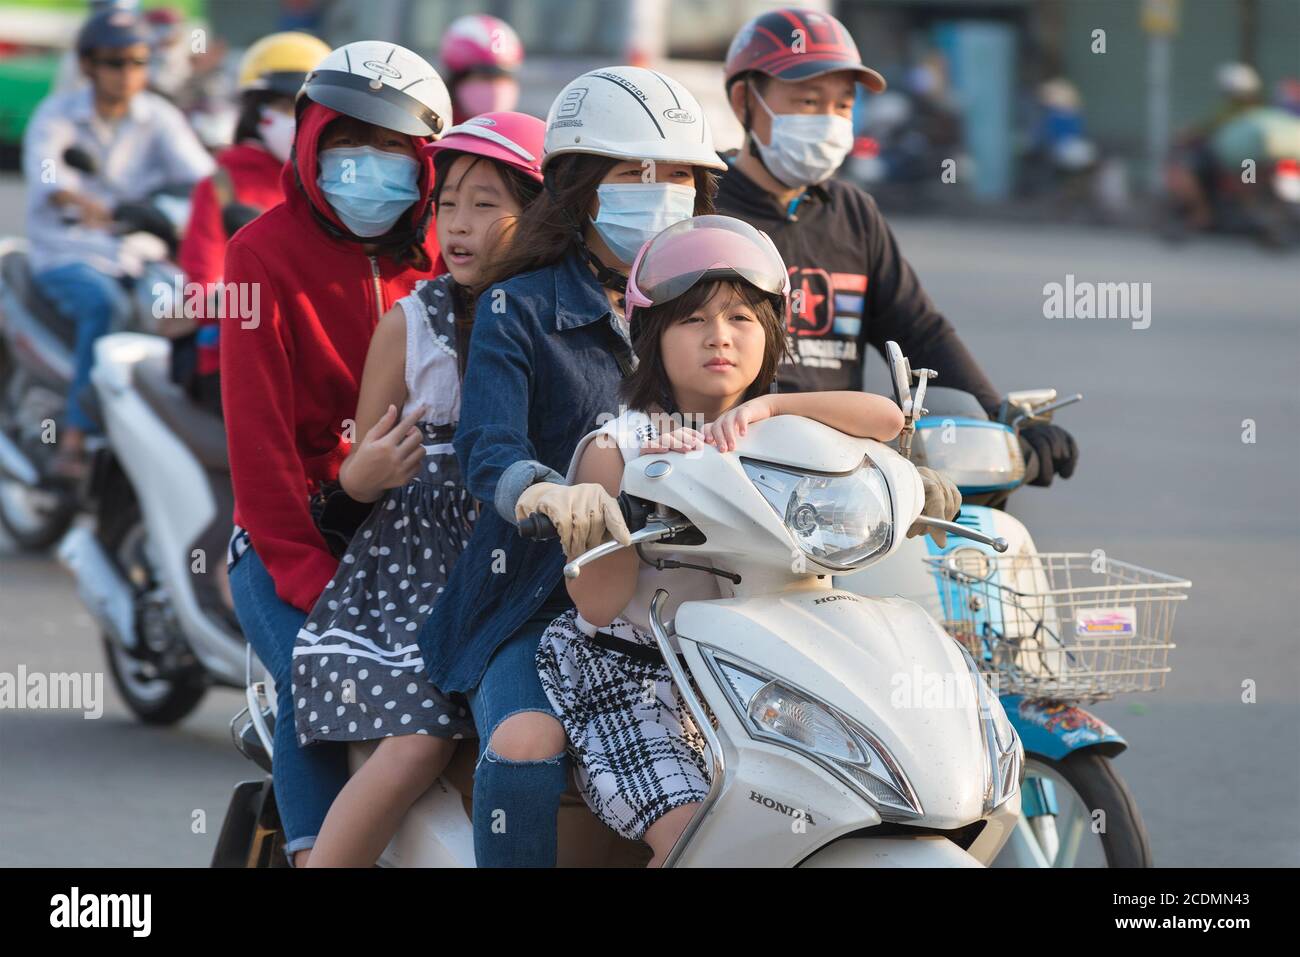 El motociclista vietnamita conduce a tres personas más Foto de stock